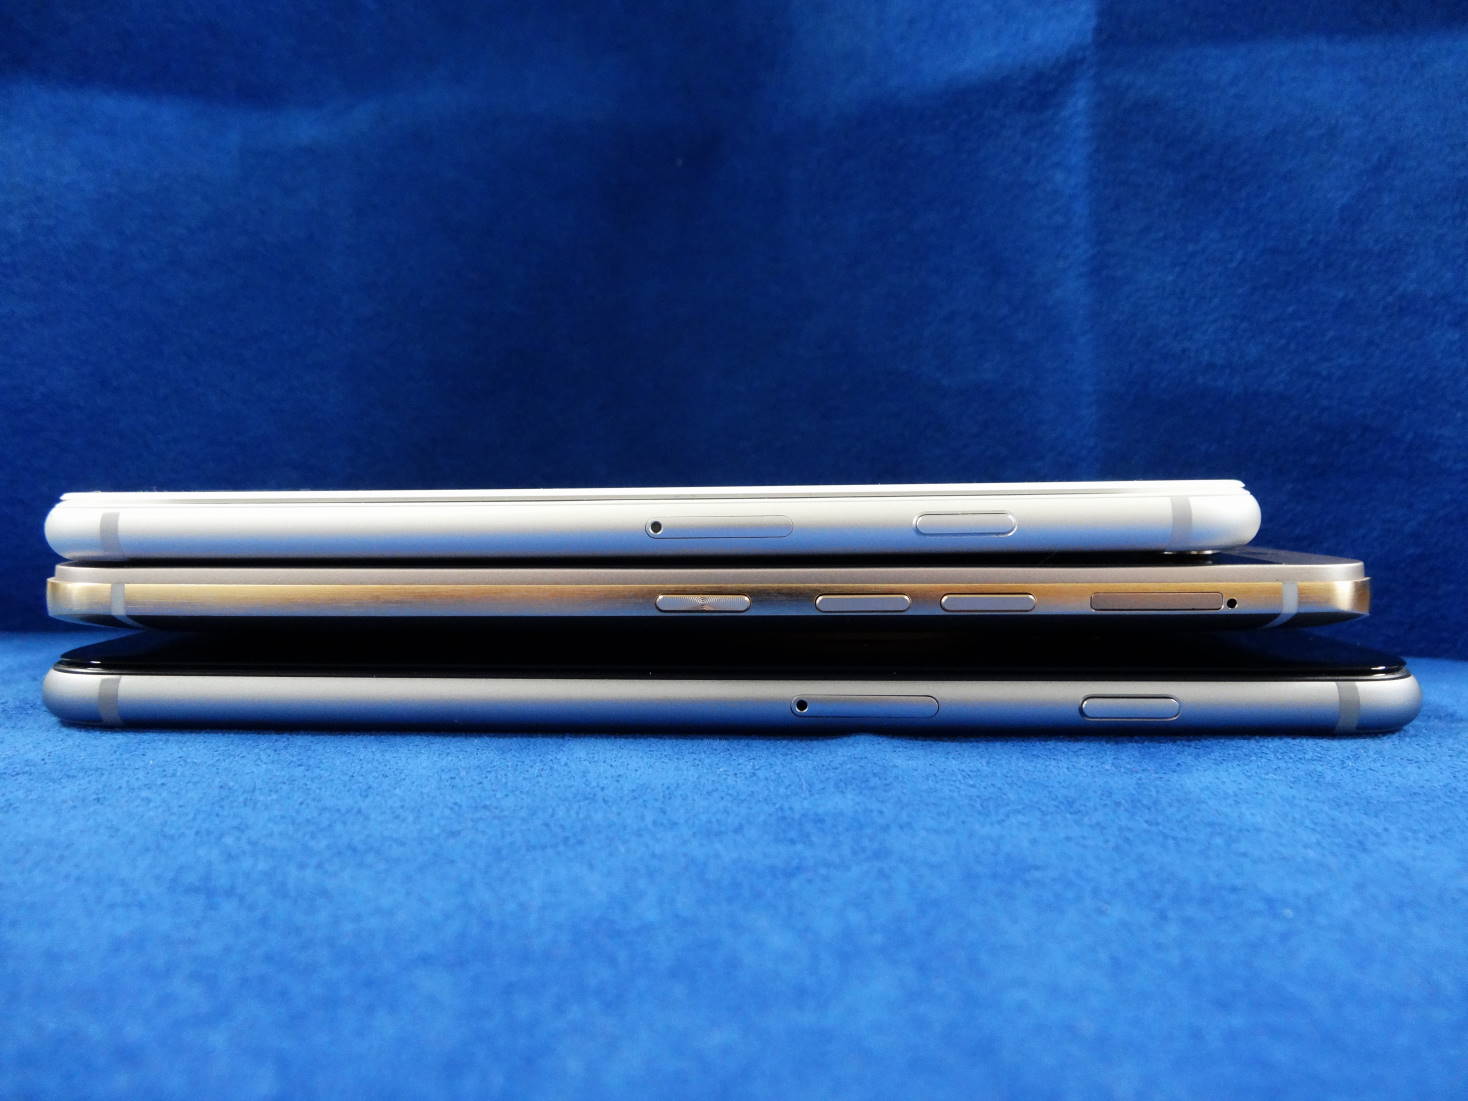 HTC One M9 Plus と iPhone 6 と iPhone 6 Plus 縦幅比較